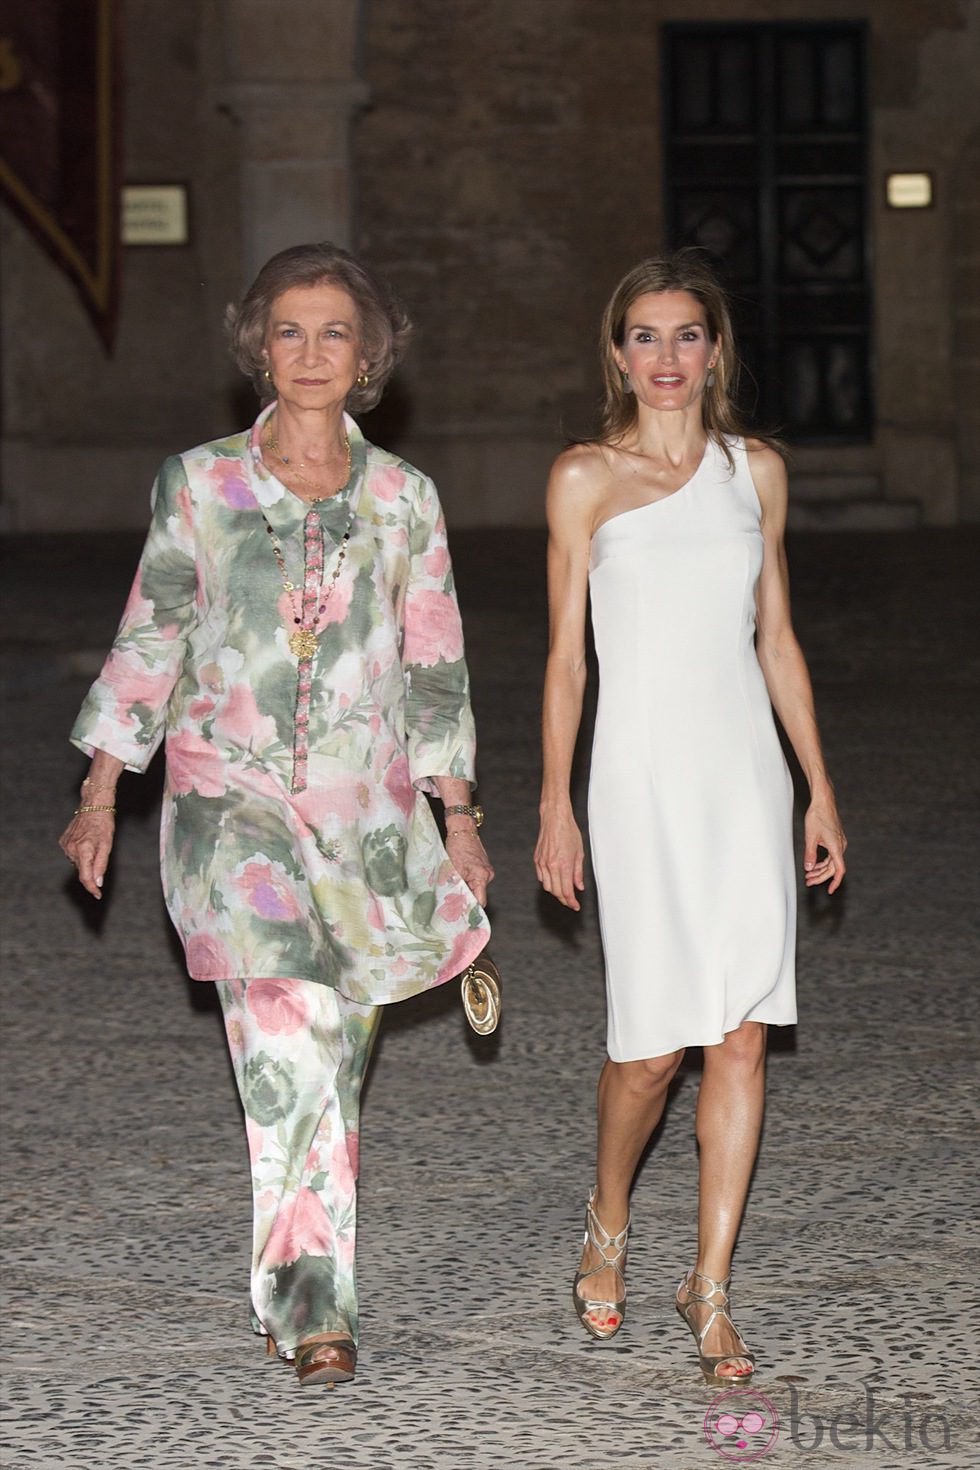 La reina Letizia y la reina Sofía en la recepción oficial de Mallorca